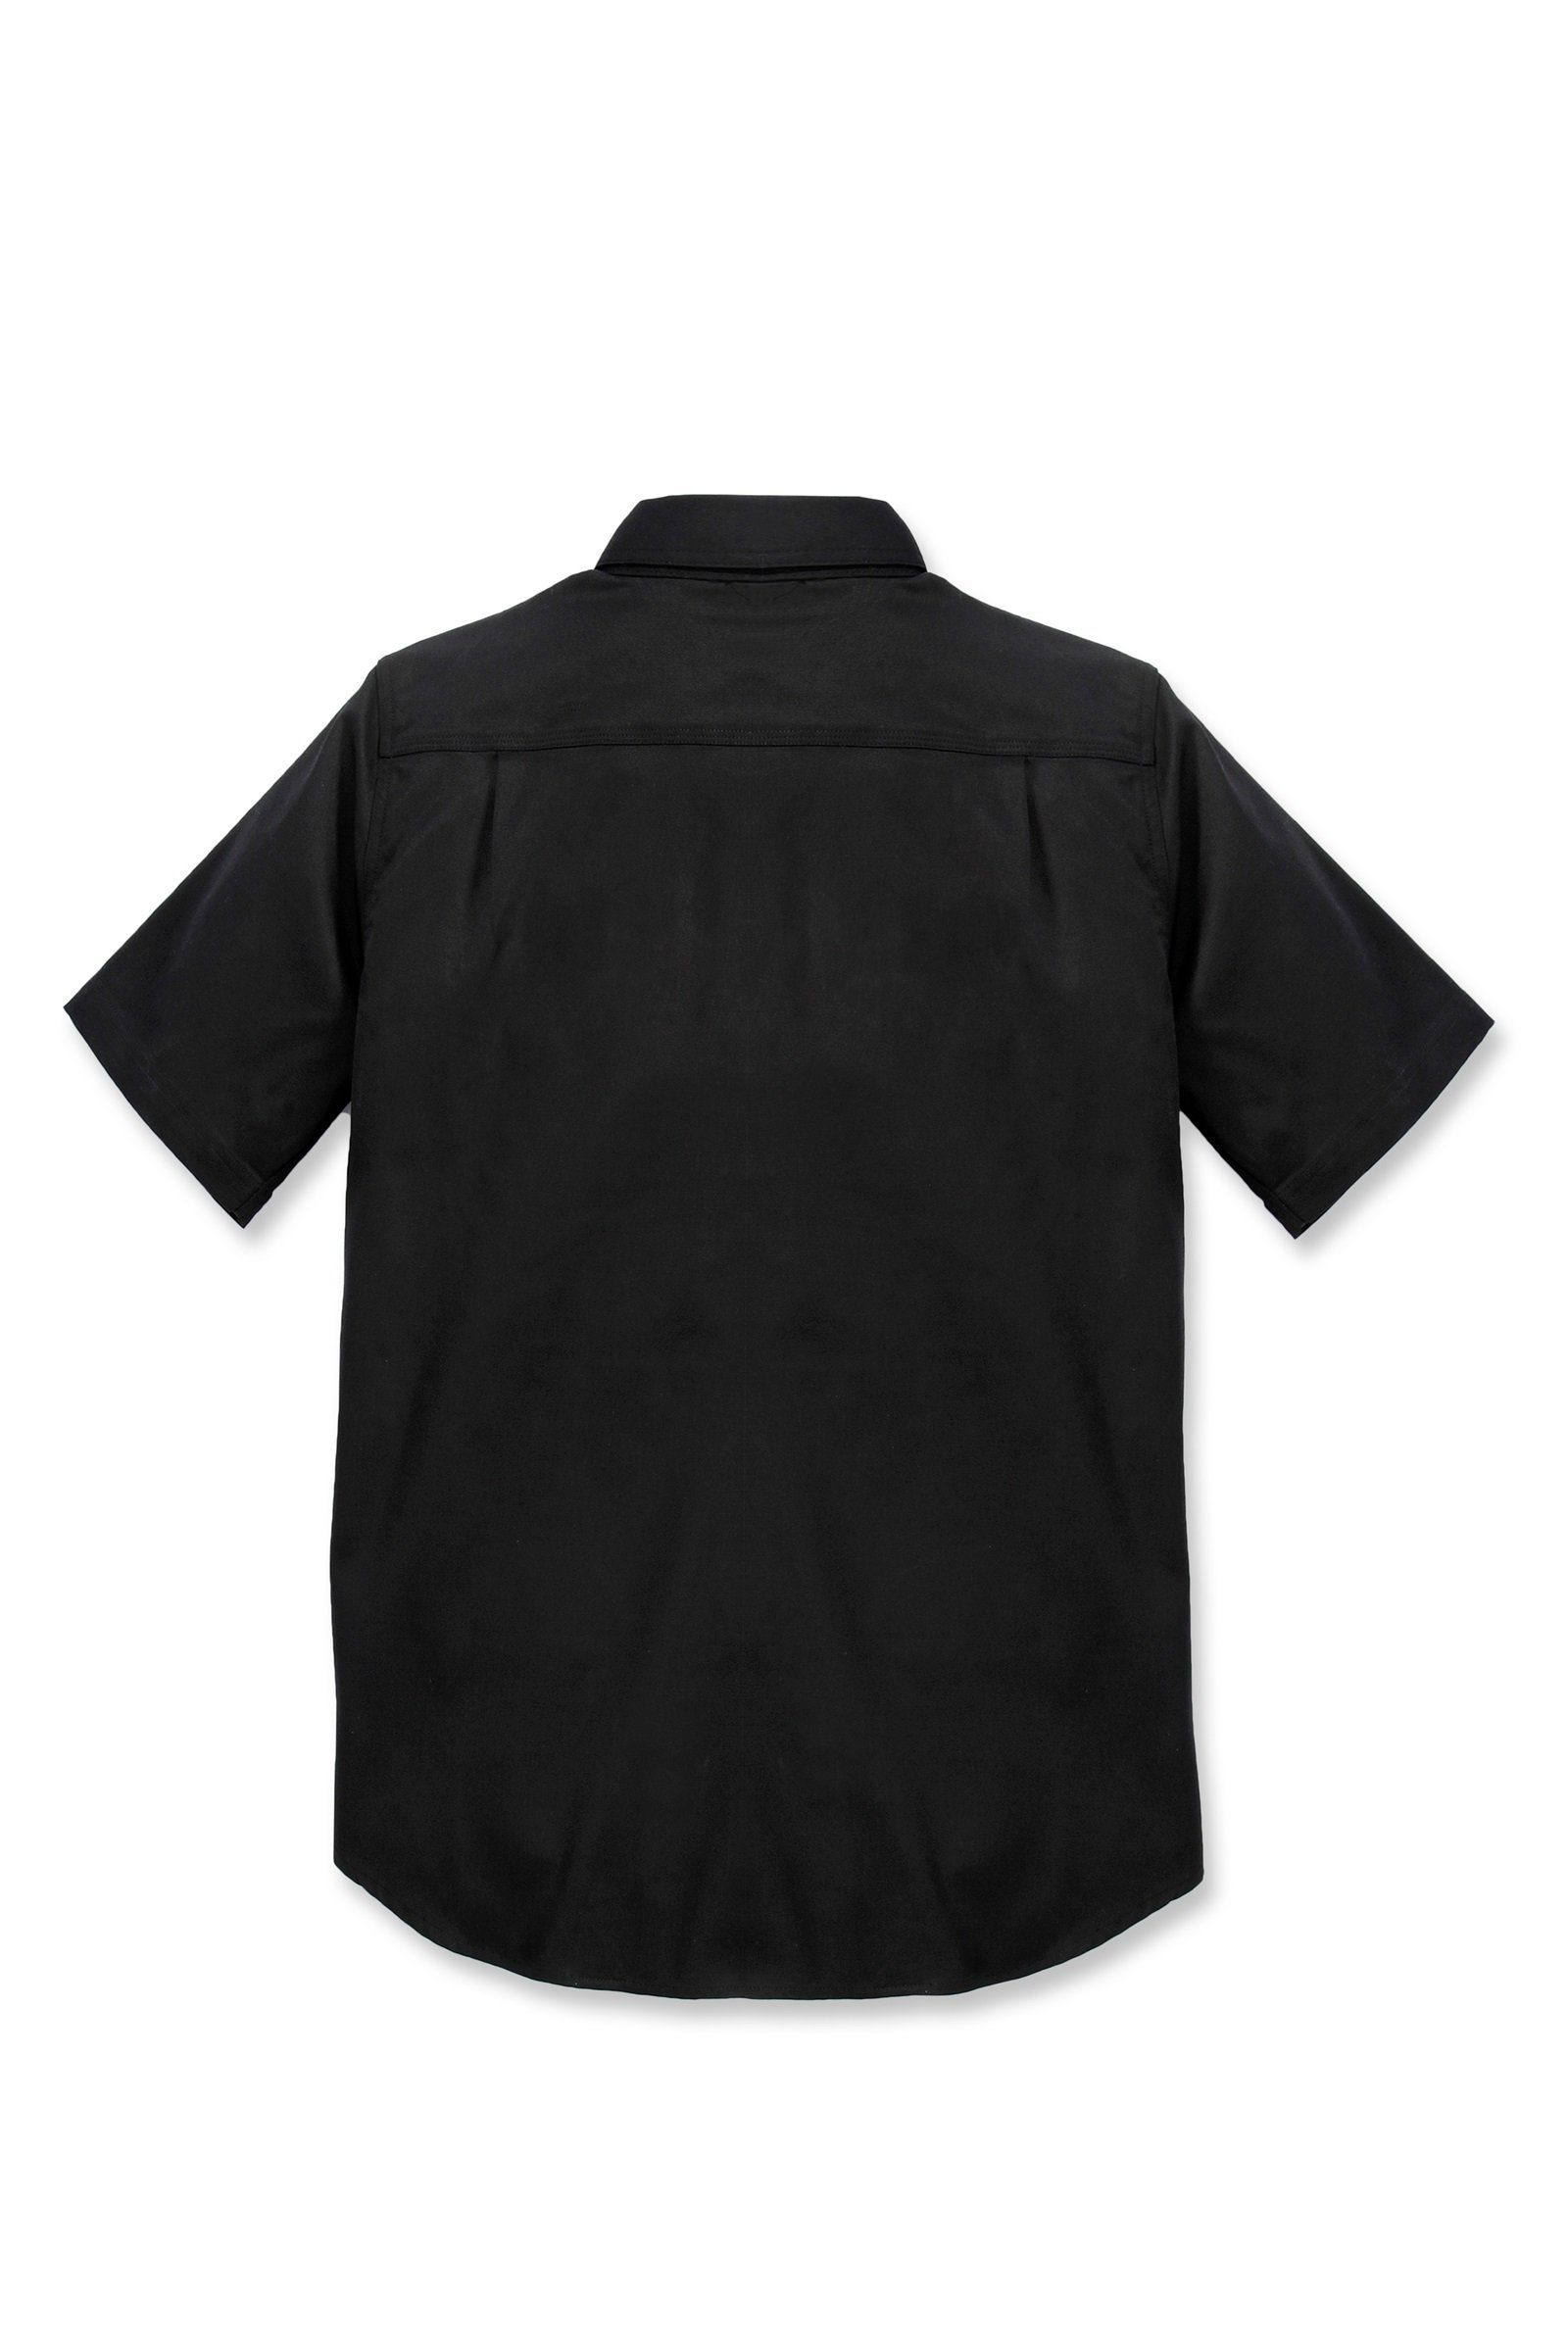 Carhartt Outdoorhemd Carhartt Herren Kurzarmhemd Rugged Prof Short Sleeve